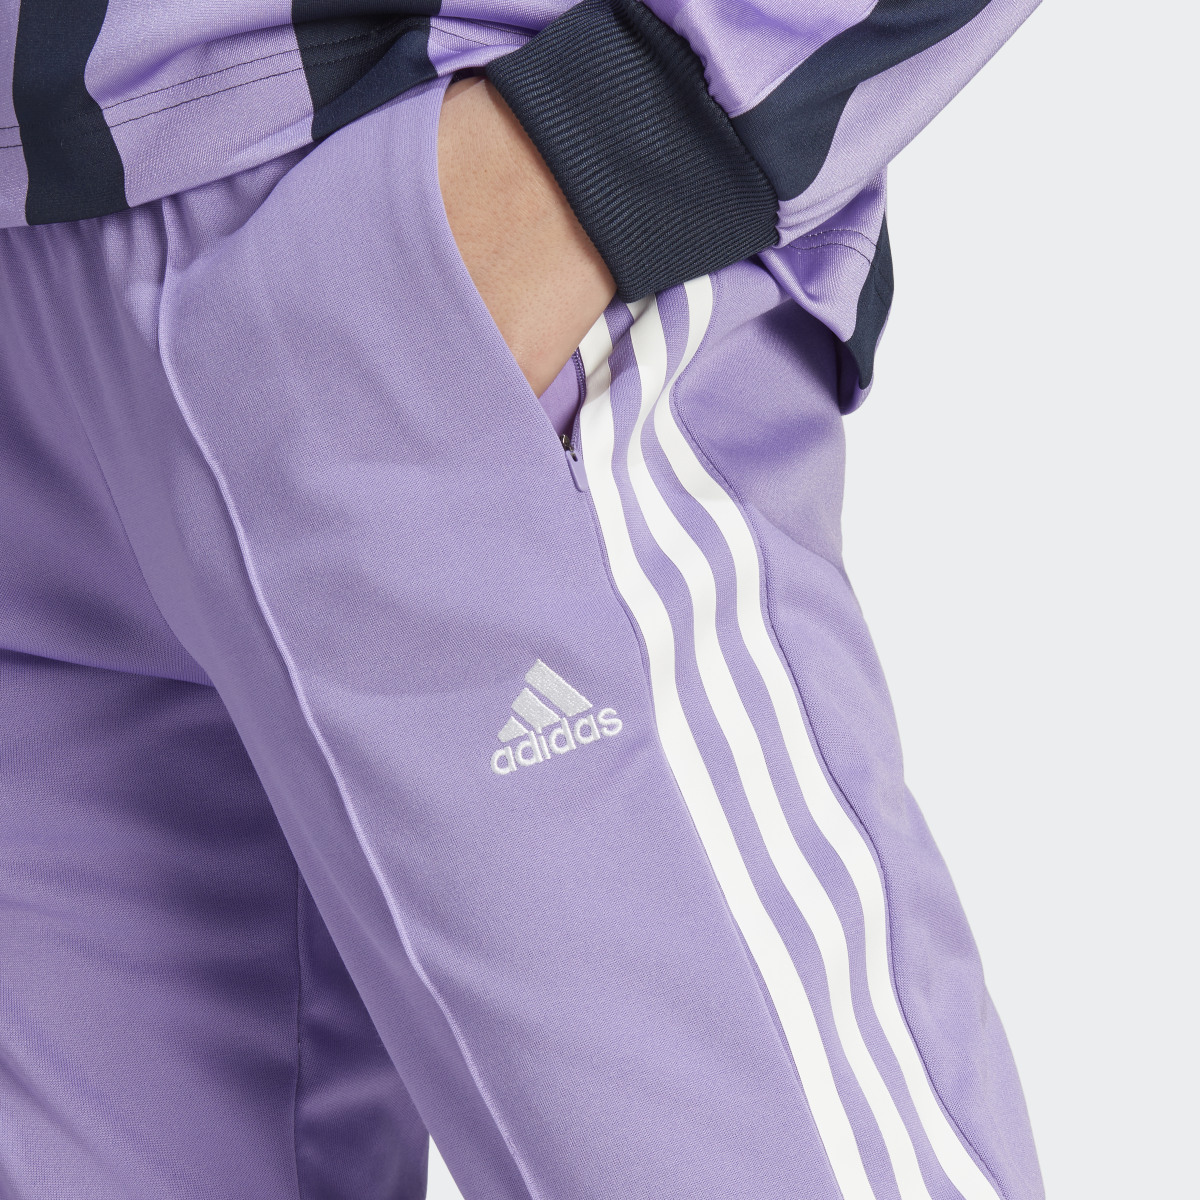 Adidas Tiro Suit Up Lifestyle Track Pant. 5